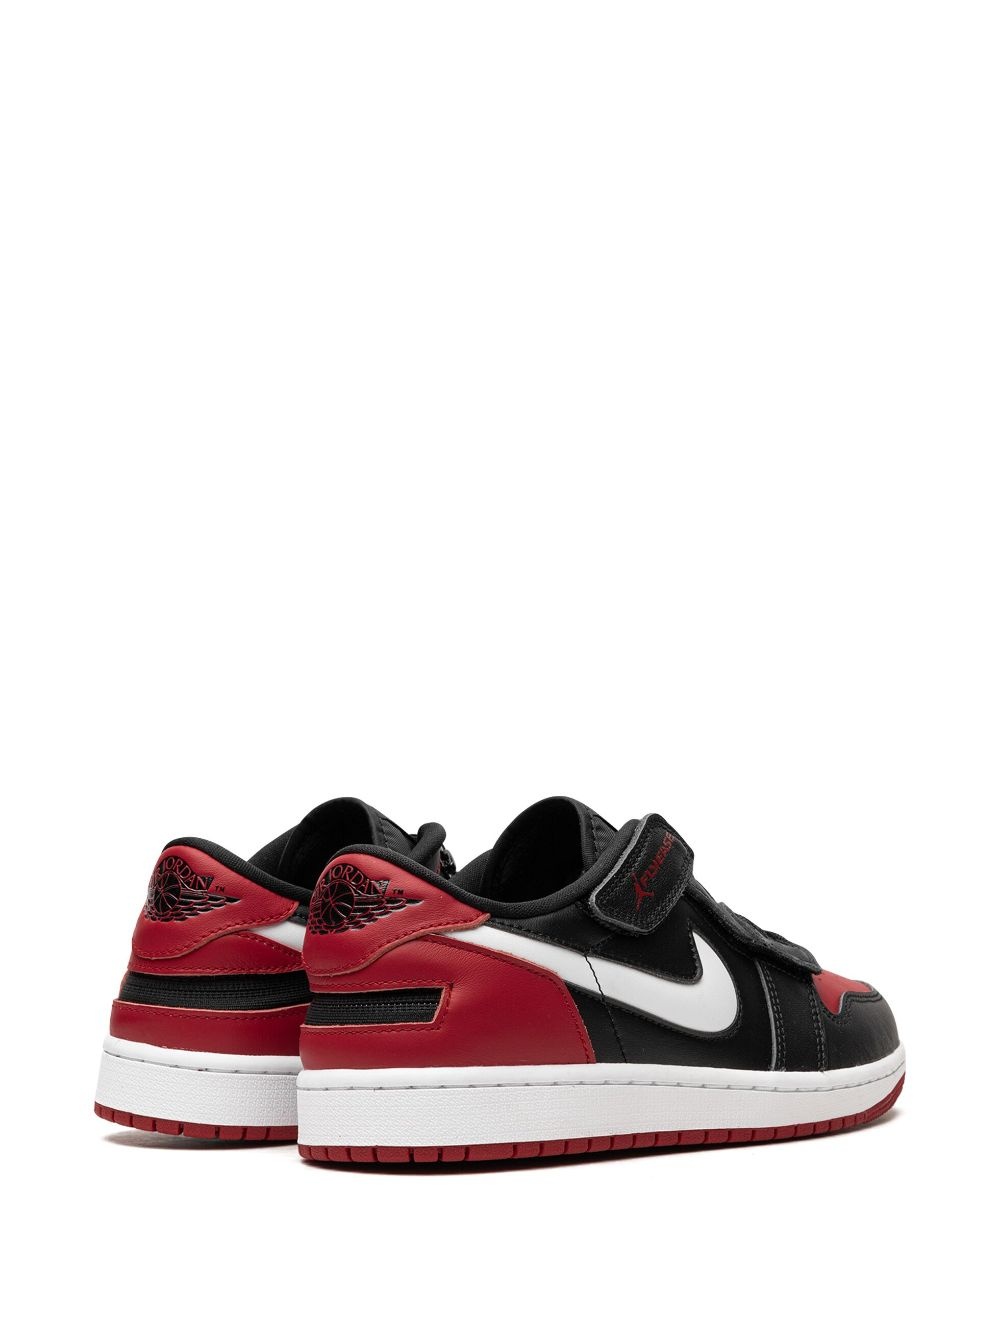 Air Jordan 1 Low Flyease "Bred" sneakers - 3